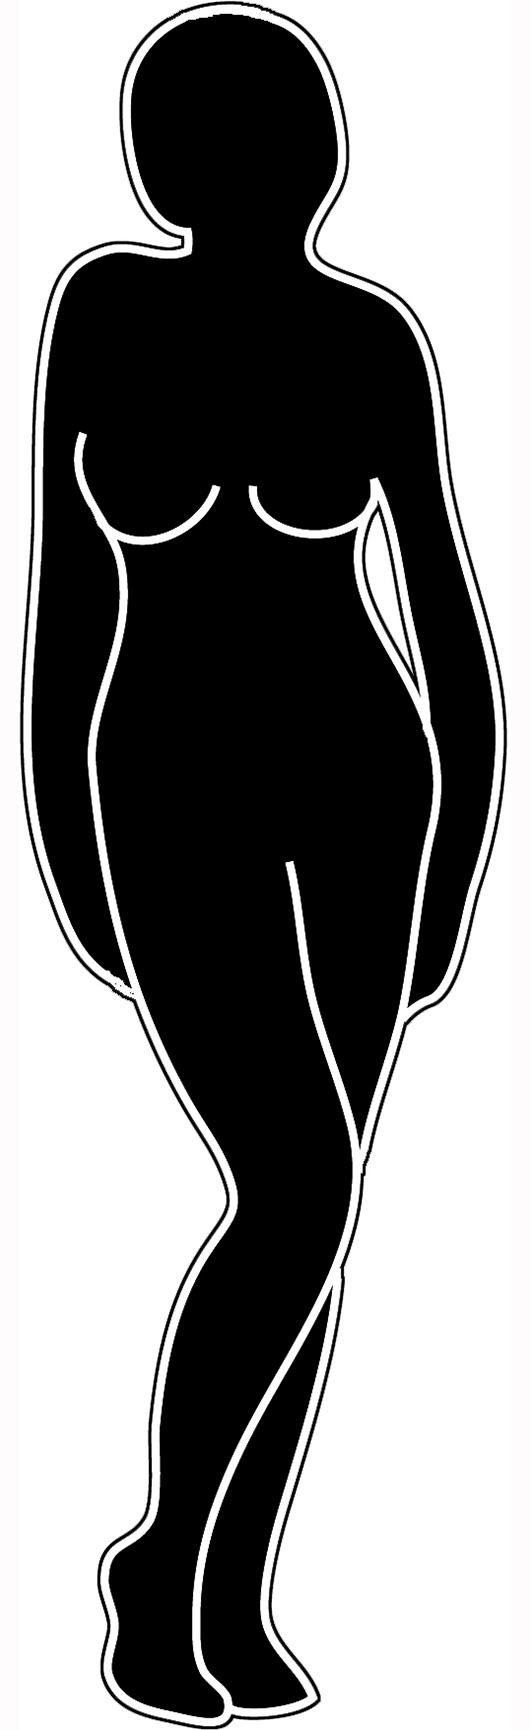 Female Body Silhouette - Cliparts.co